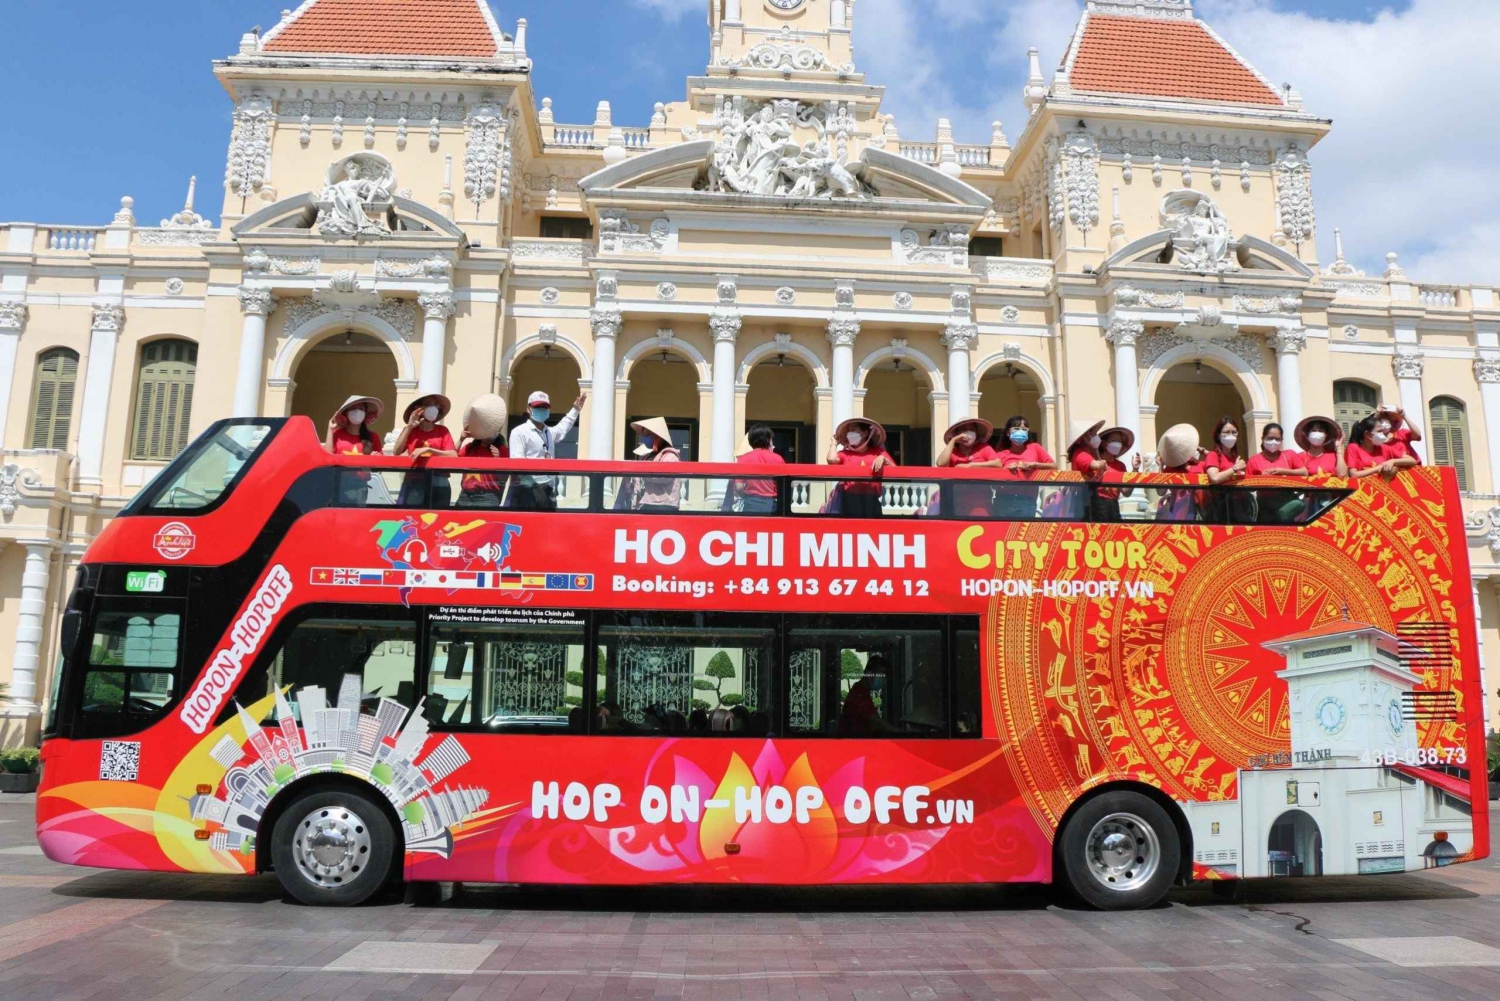 Ho Chi Minh City: 4 Hour Hop-on Hop-off Bus Tour